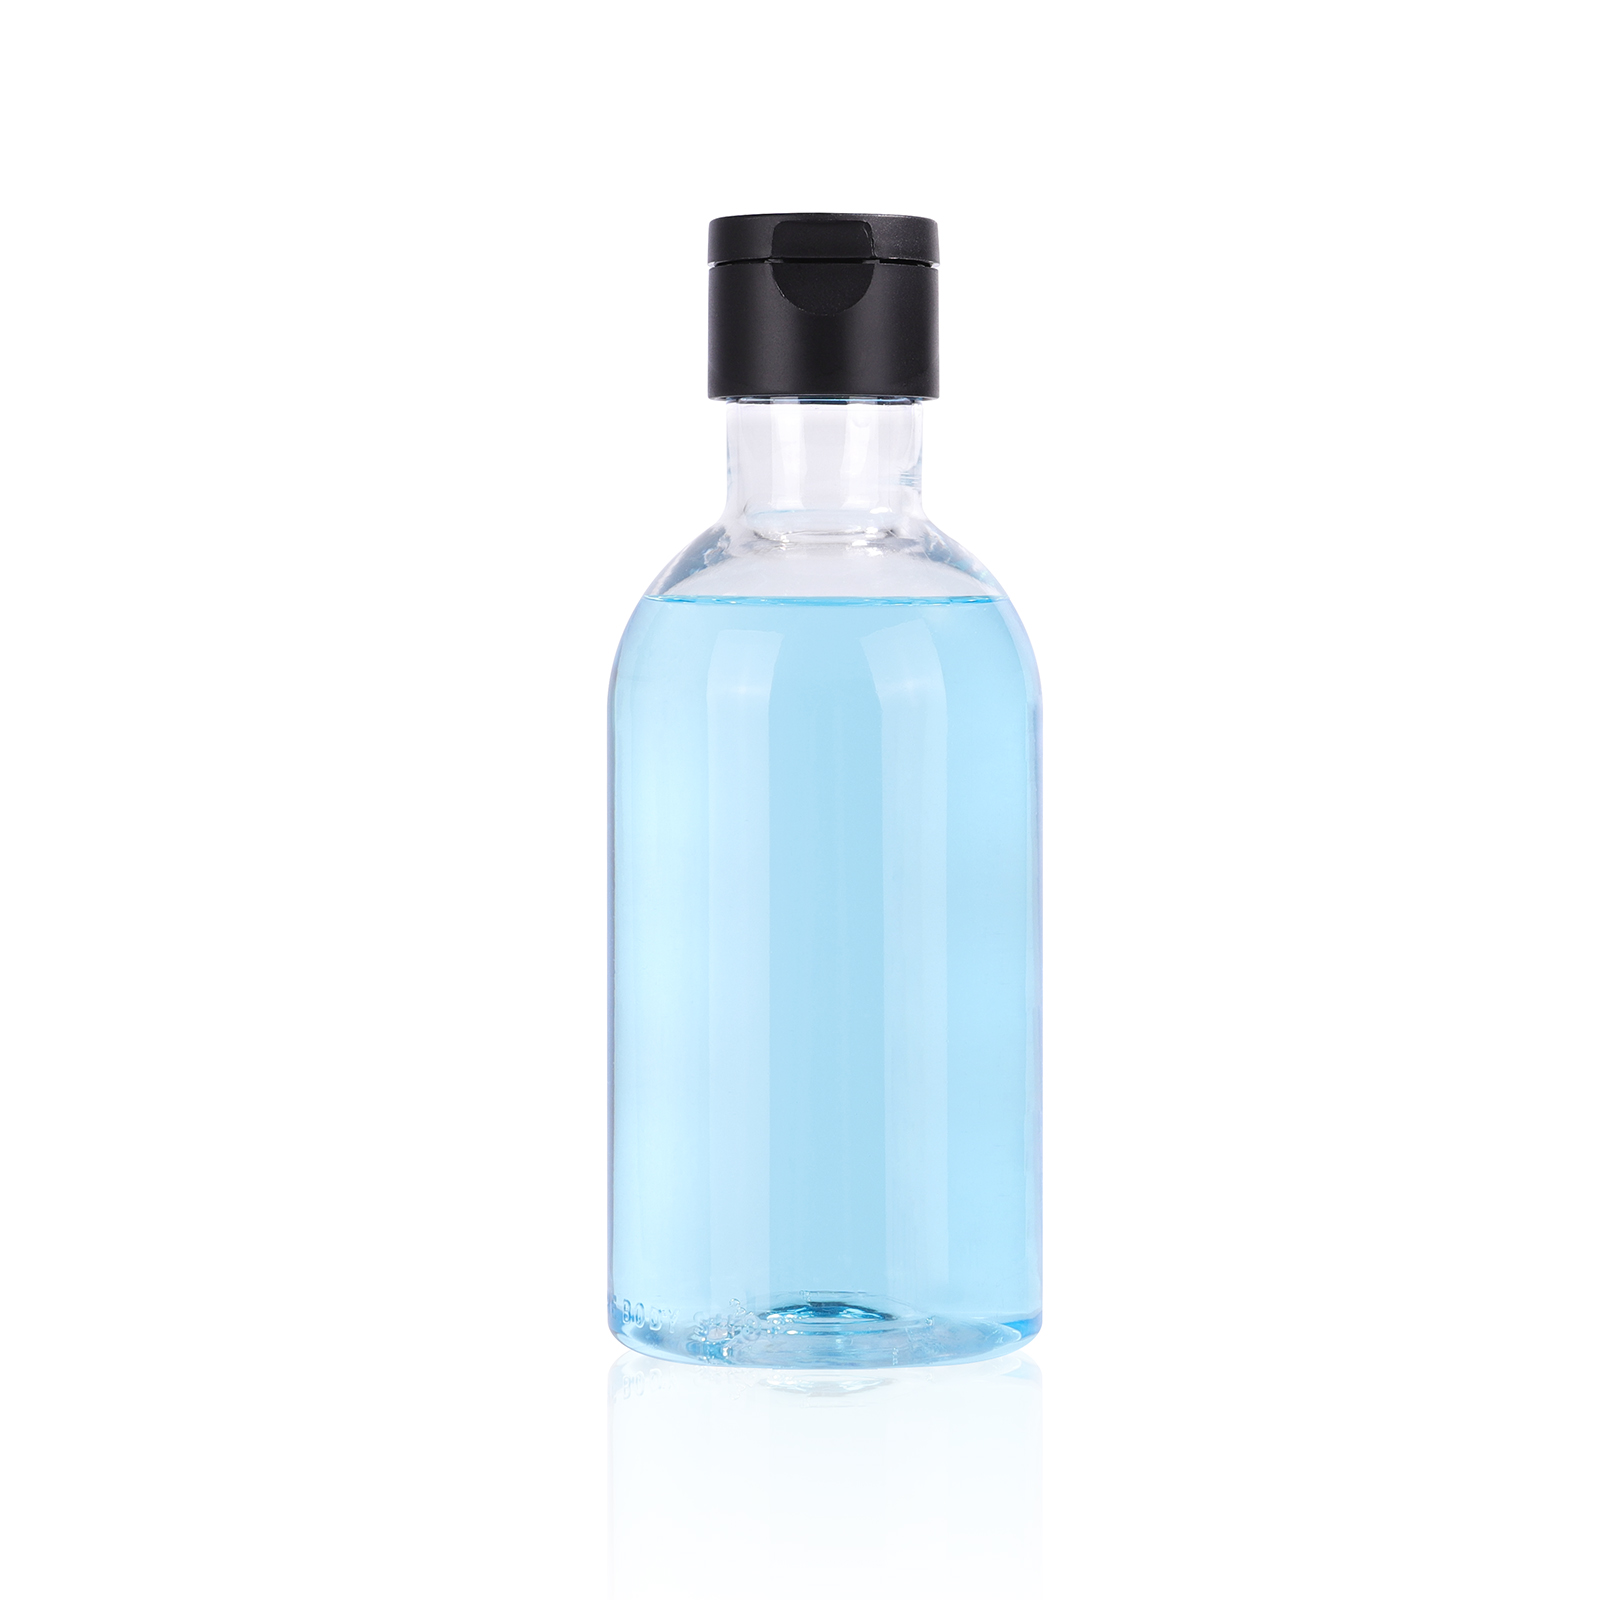 150ml empty custom made PET plastic bottle / body lotion/detergent /make remover bottle